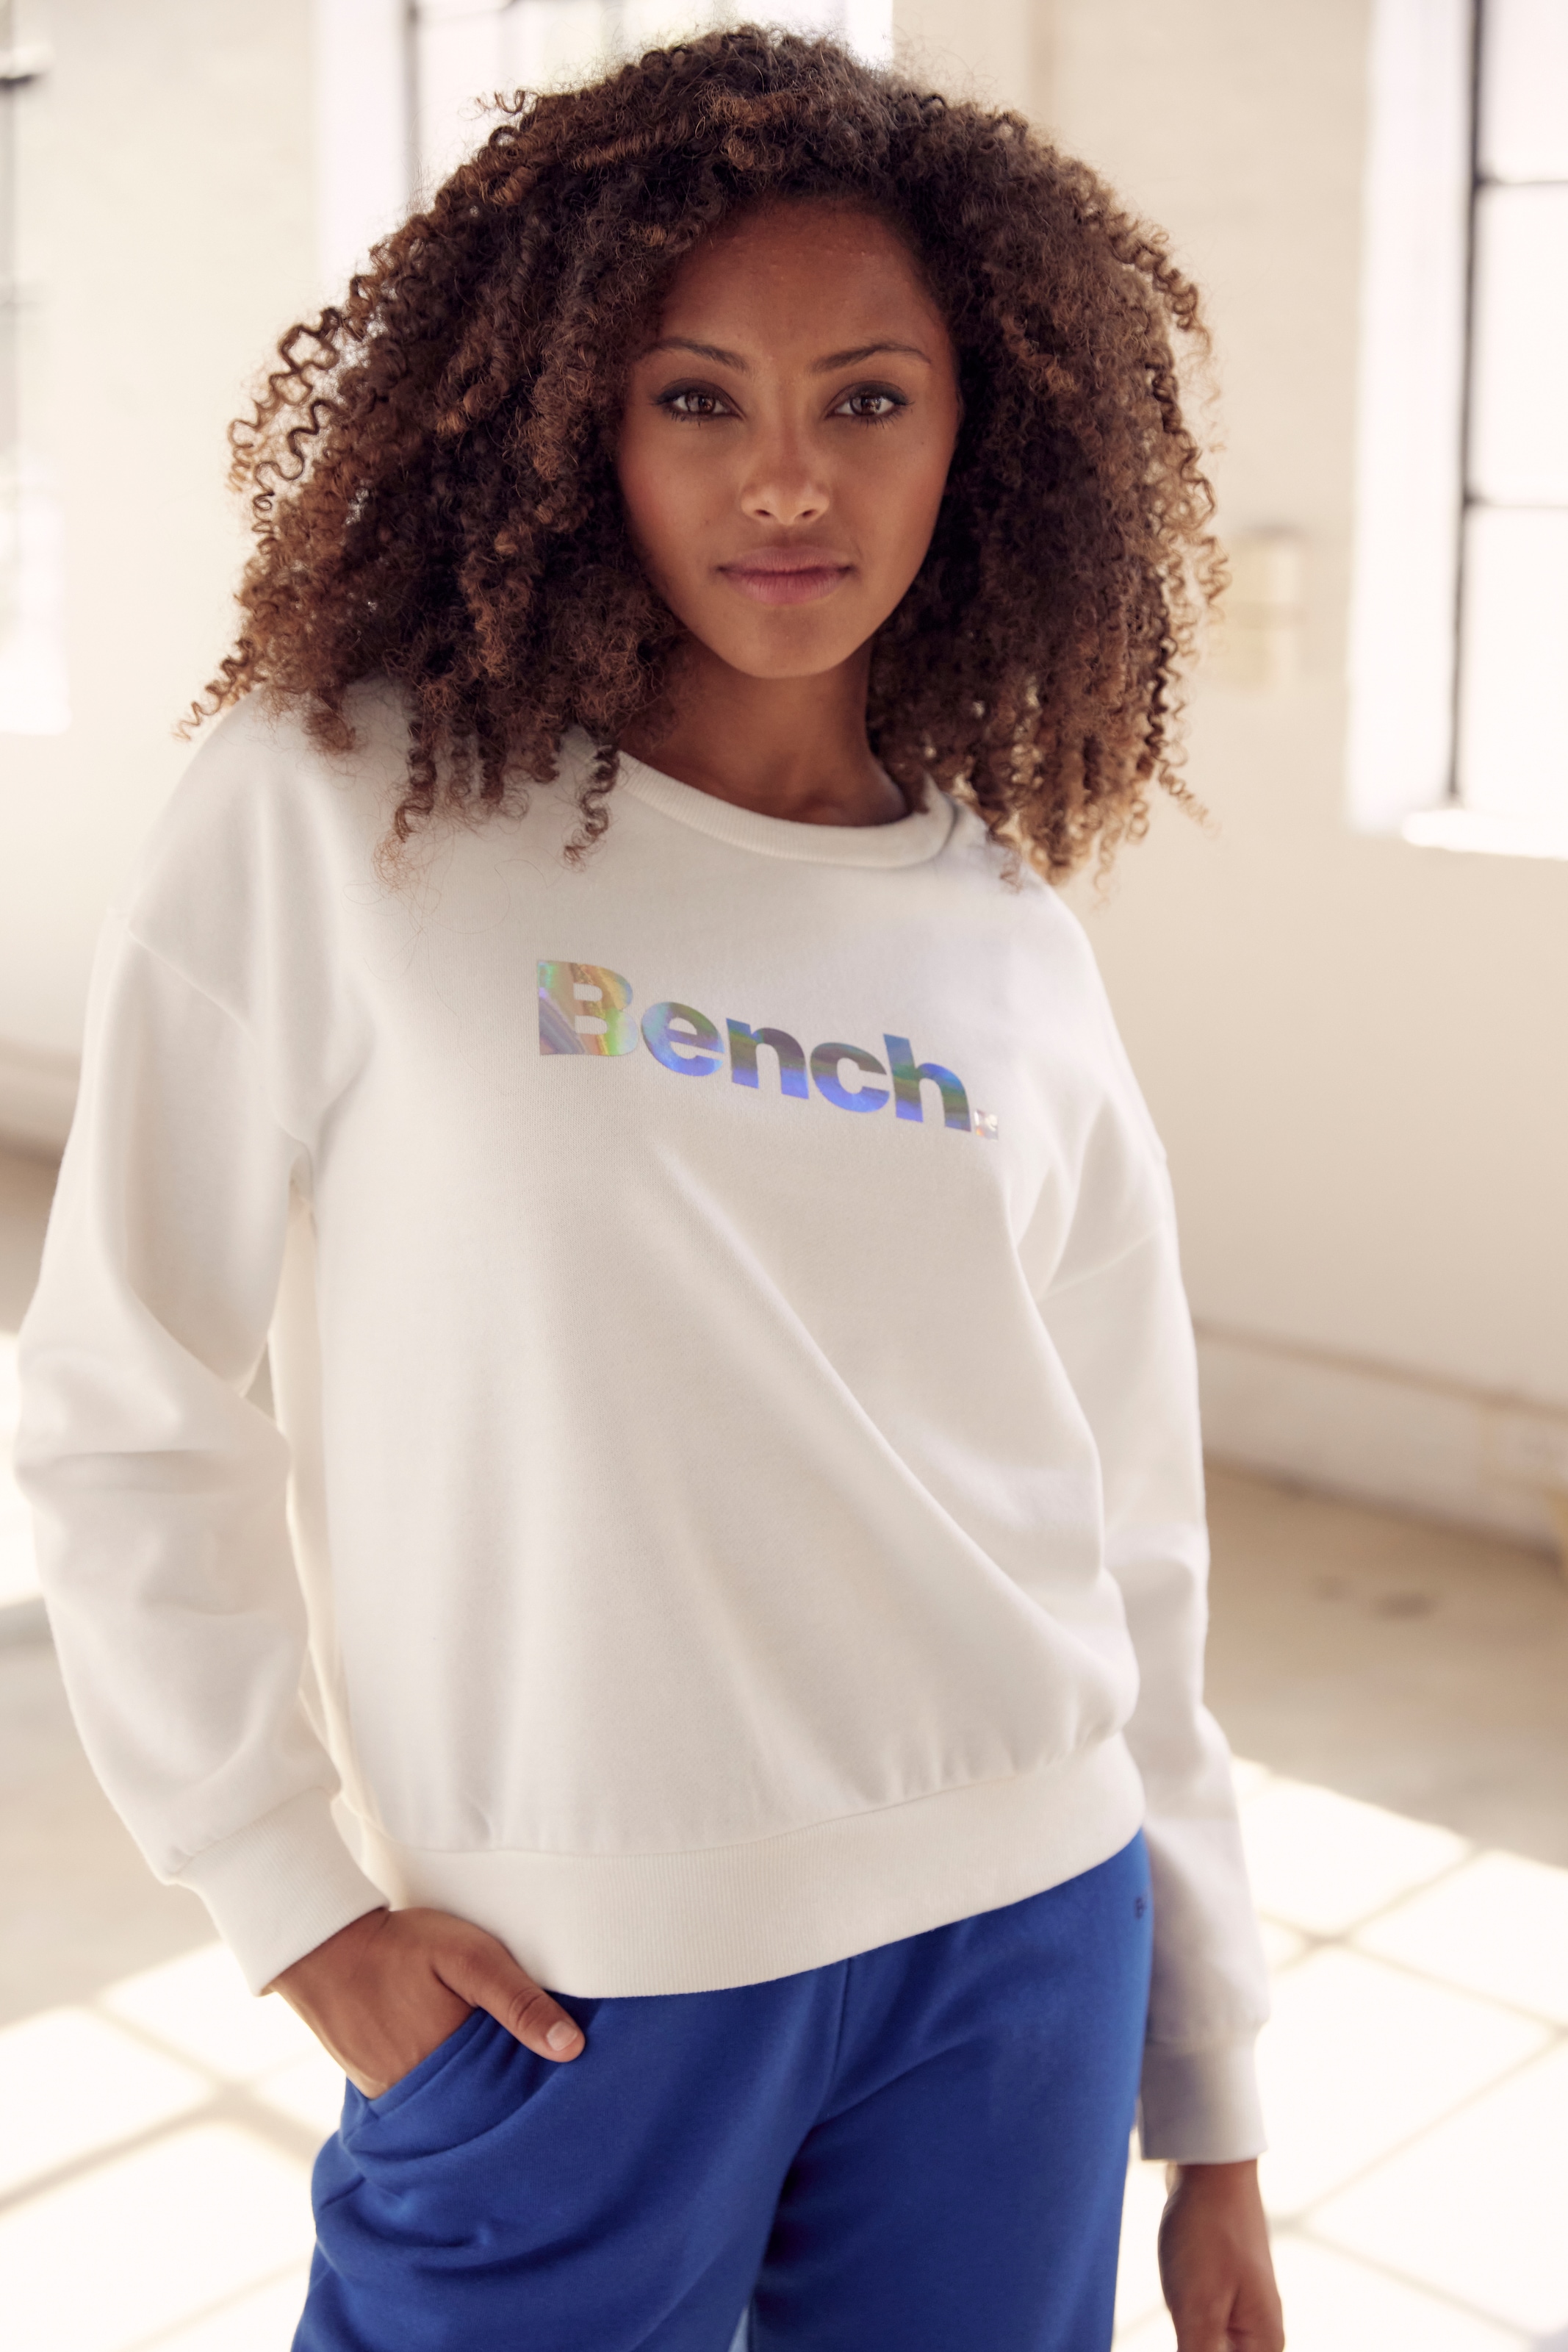 Bench. Loungewear Sweatshirt »-Loungeshirt«, mit glänzendem Logodruck, Loungewear, Loungeanzug